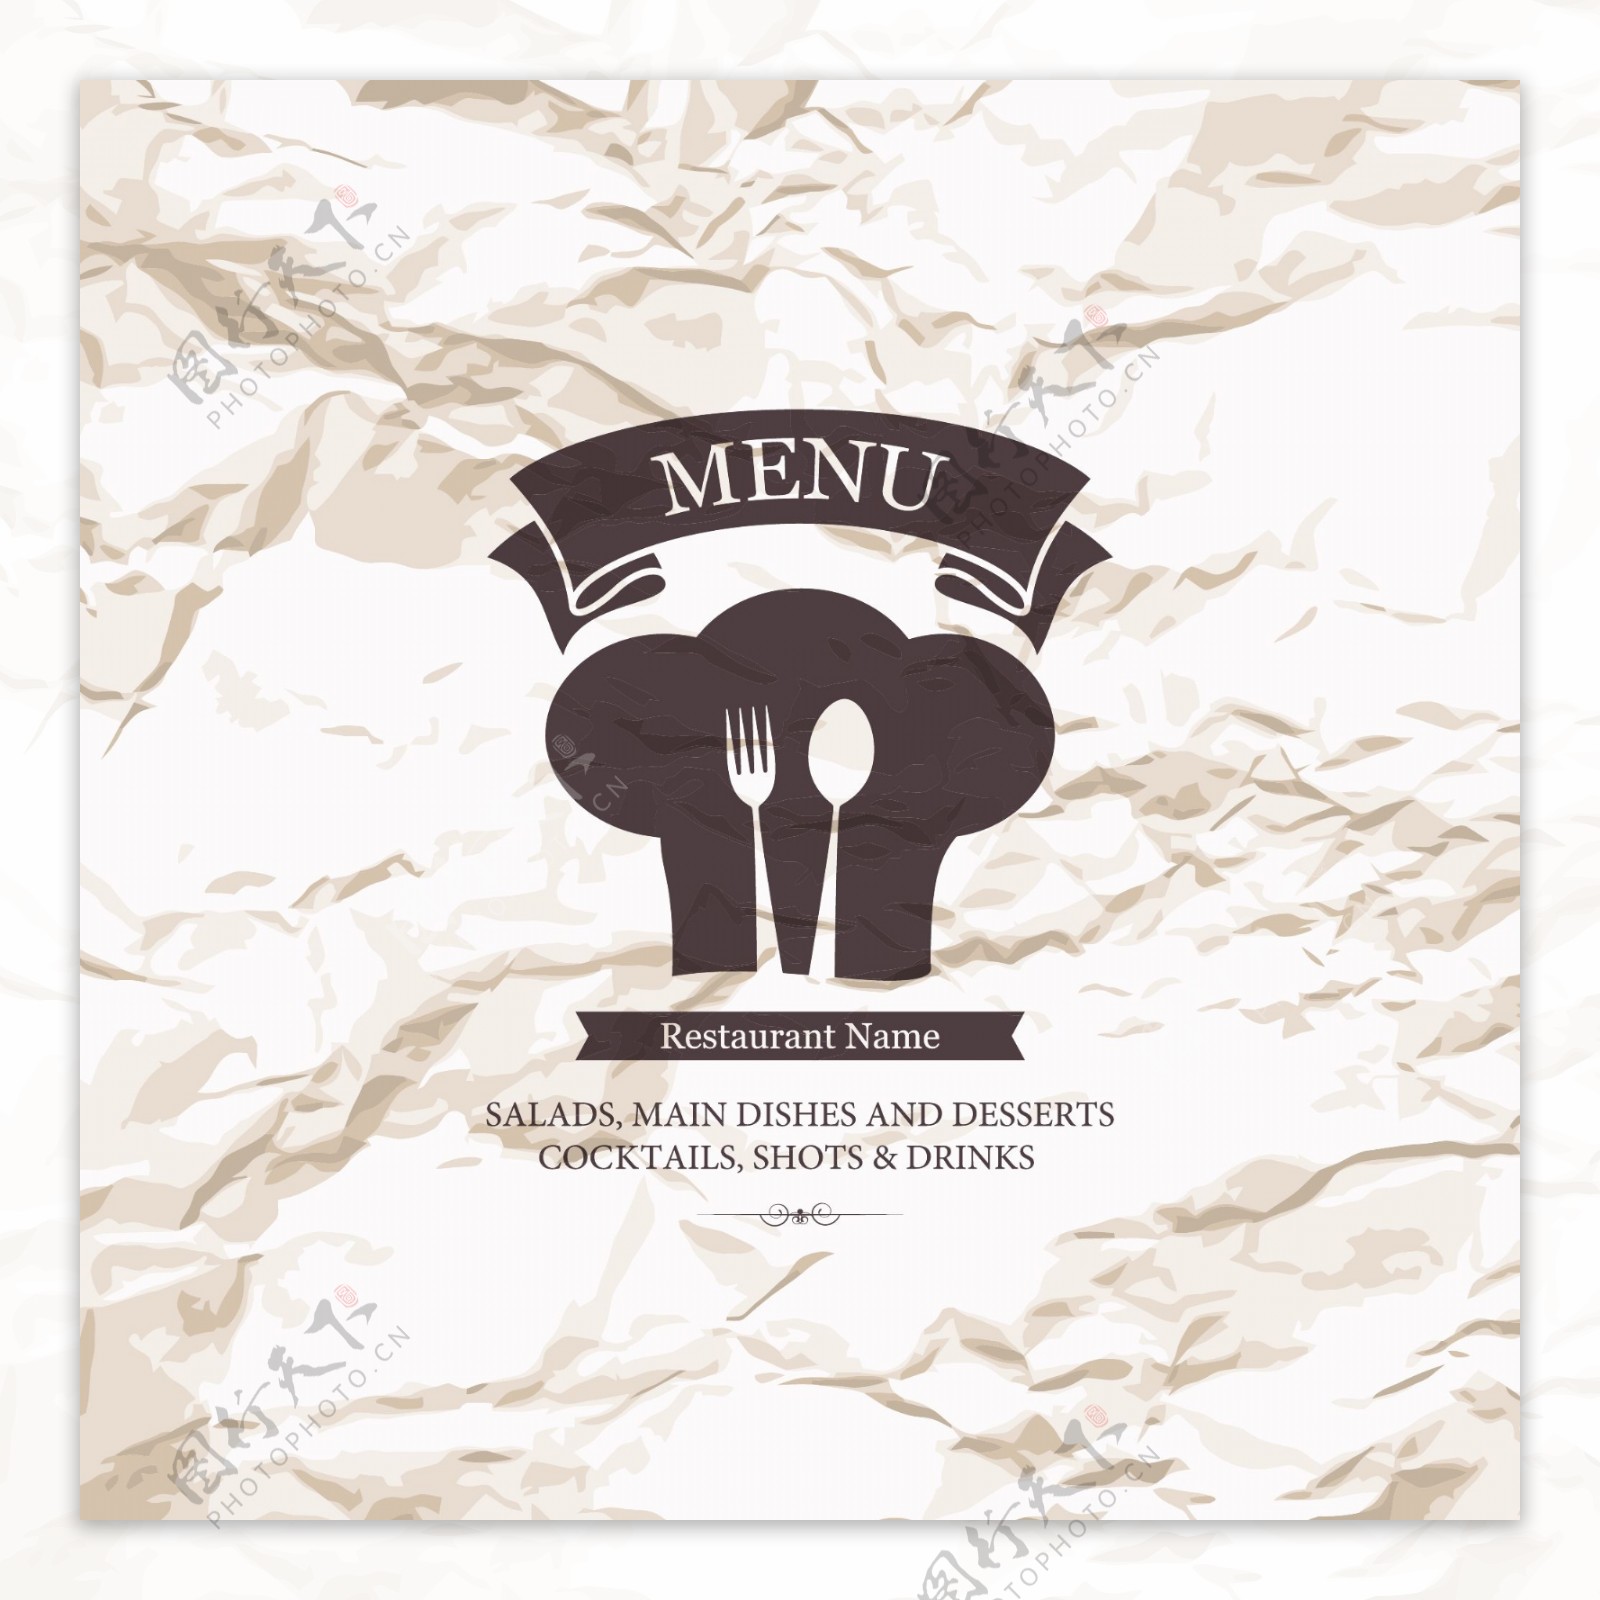 怀旧纸张西餐厅菜单封面图片